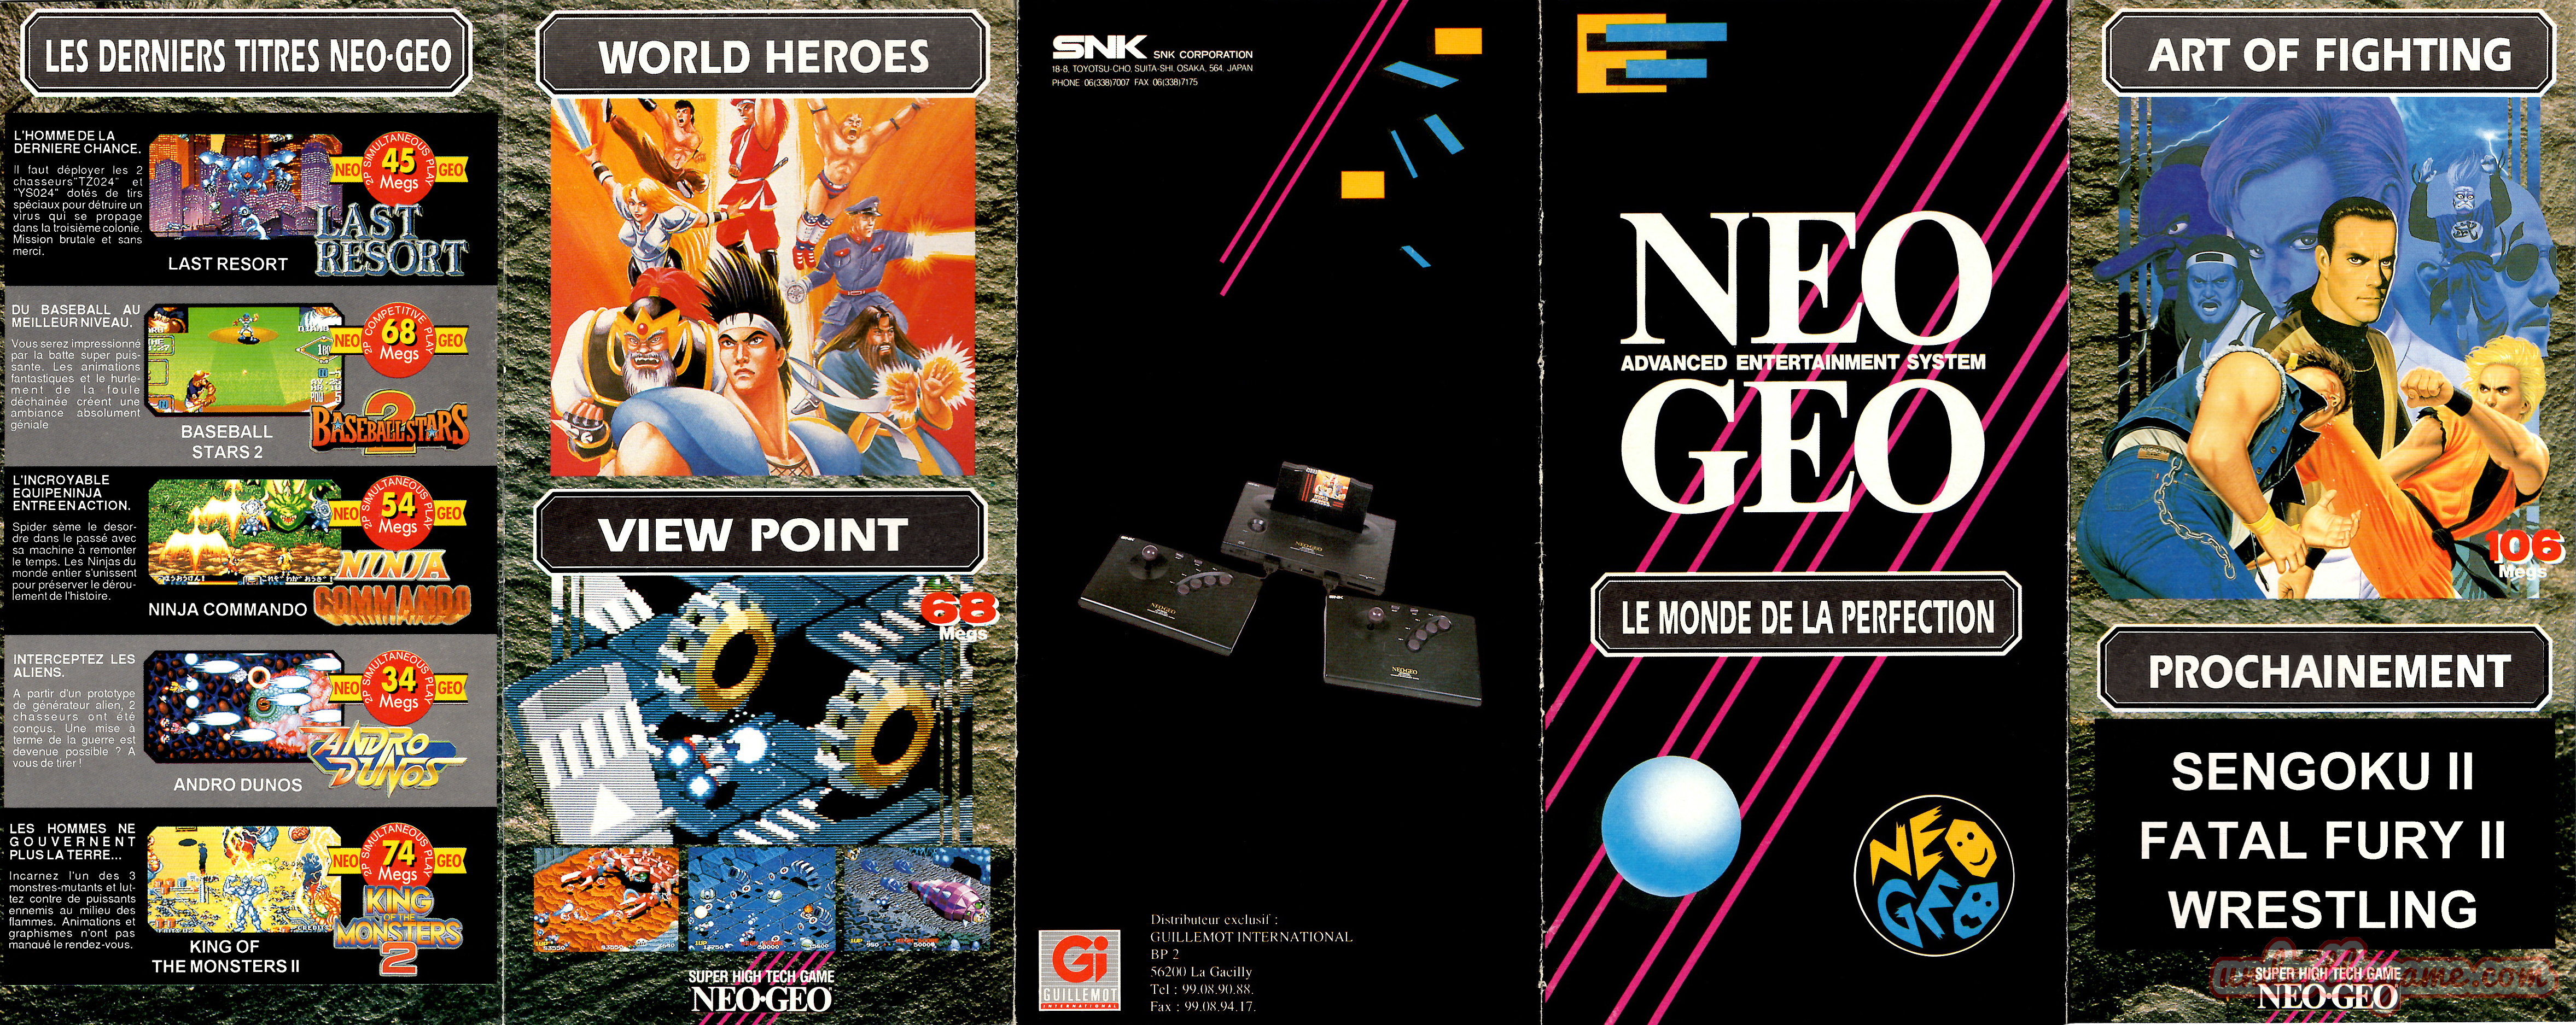 Neo Geo dans la presse (ancien post) - Page 3 Depliant-snk-neo-geo-le-monde-de-la-perfection-1992-recto